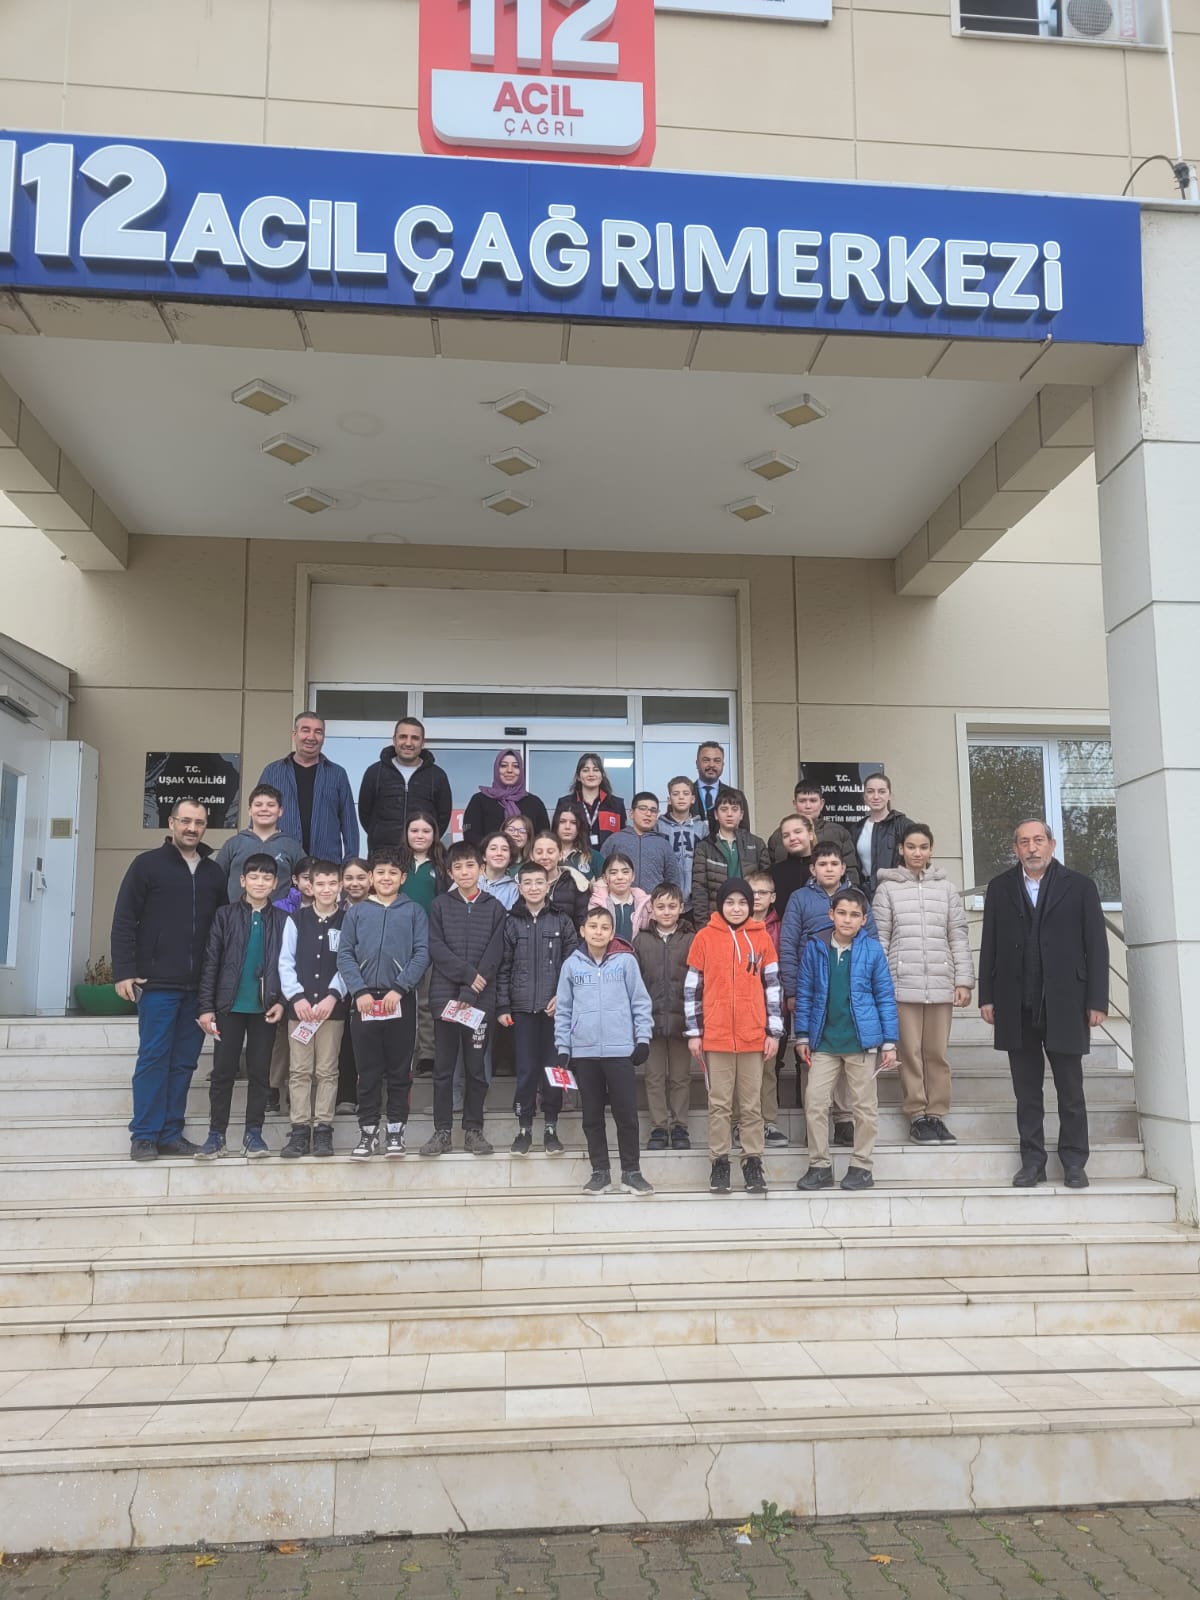 Mehmet Akif İnan  İmam Hatip Ortaokulu Öğrencilerinden Uşak 112 Acil Çağrı Merkezi Müdürlüğüne Ziyaret